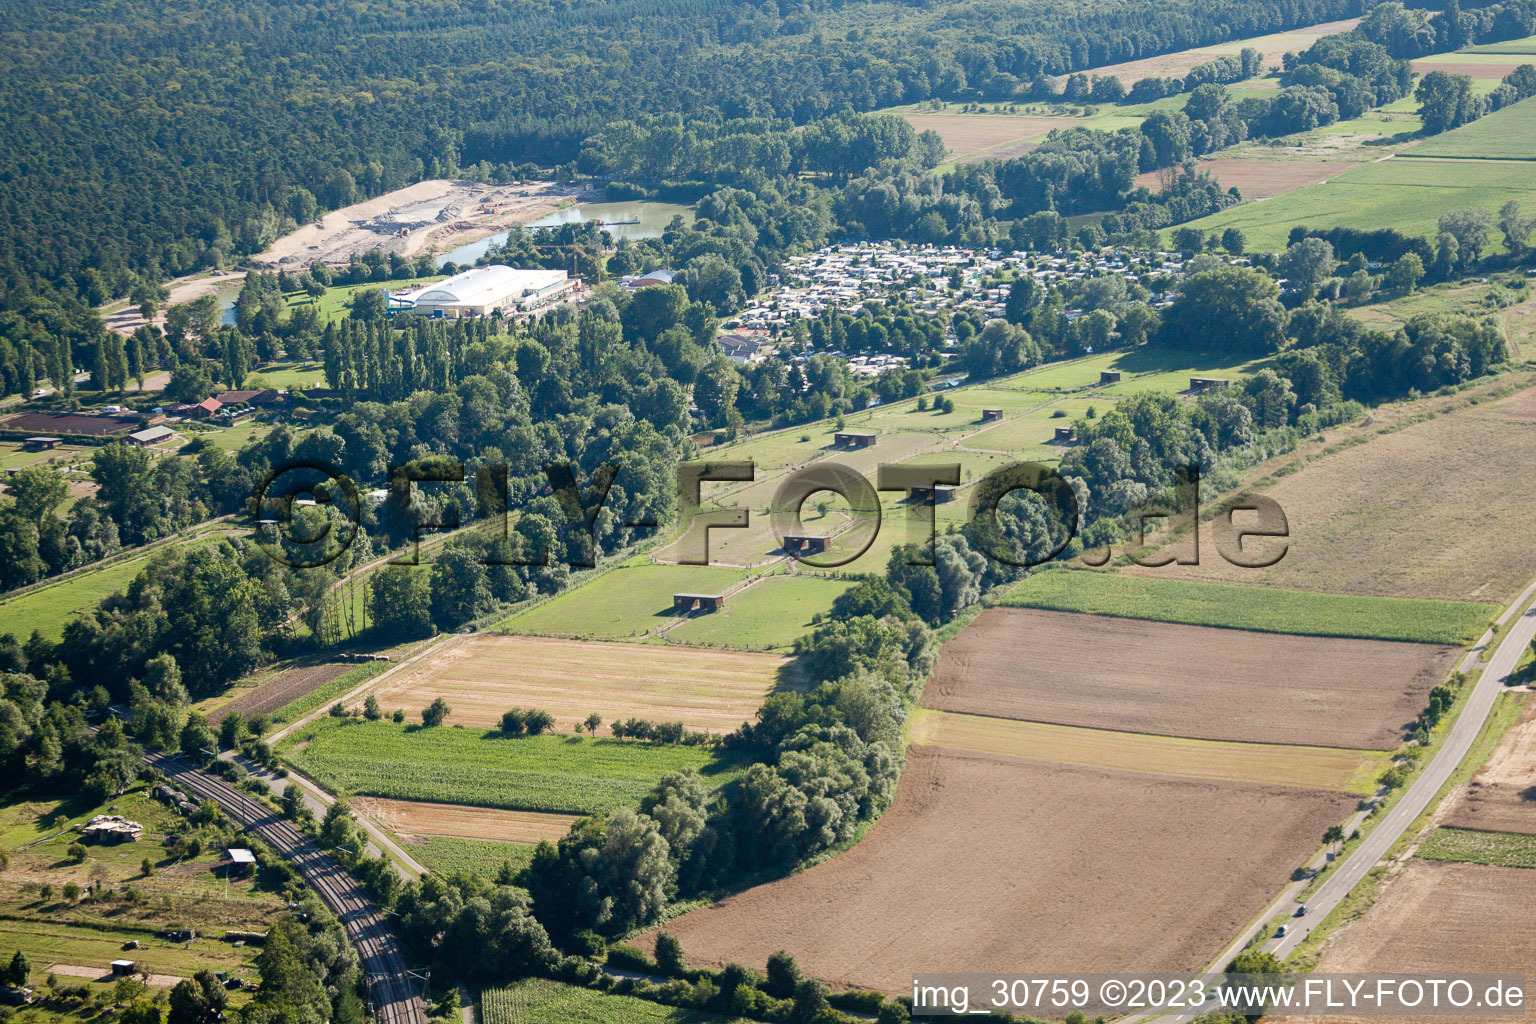 Luftbild von Rülzheim, Straussenfarm Mhou im Bundesland Rheinland-Pfalz, Deutschland